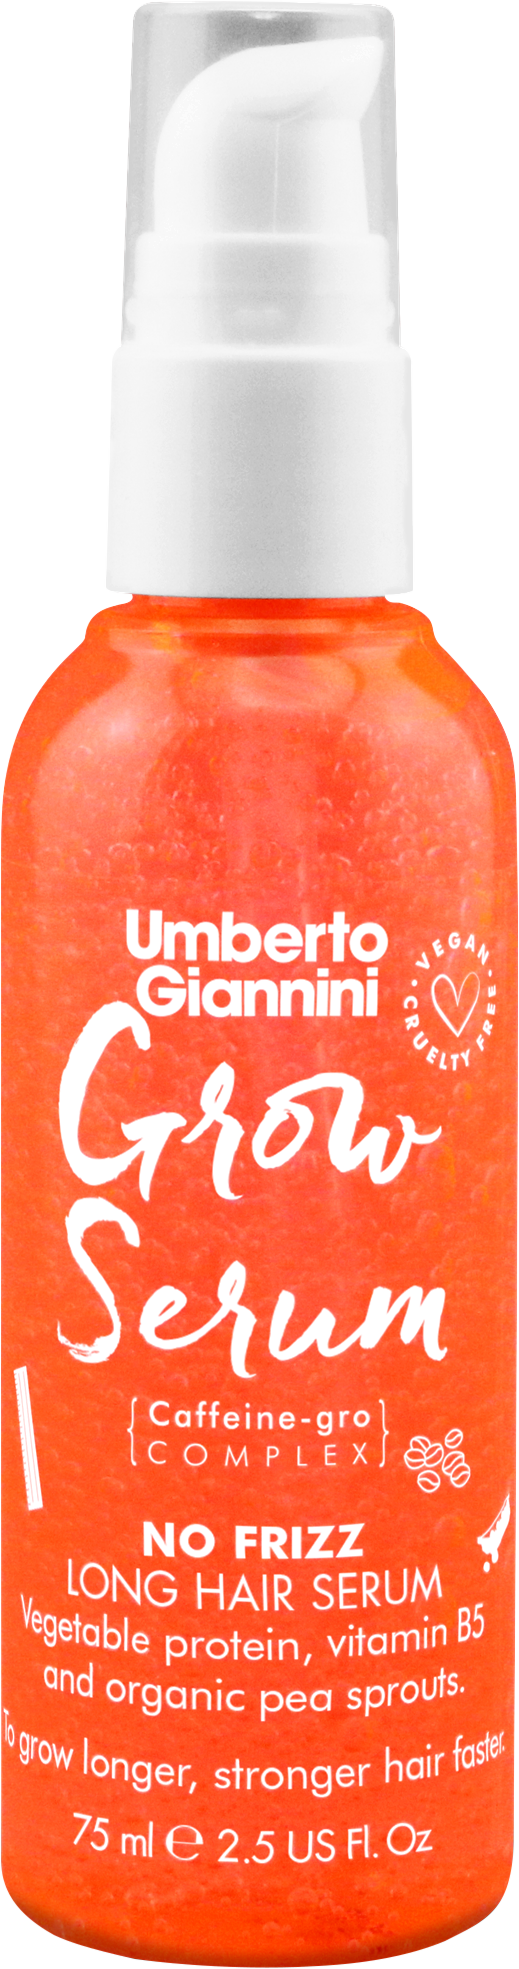 Umberto Giannini Grow Serum 75 ml